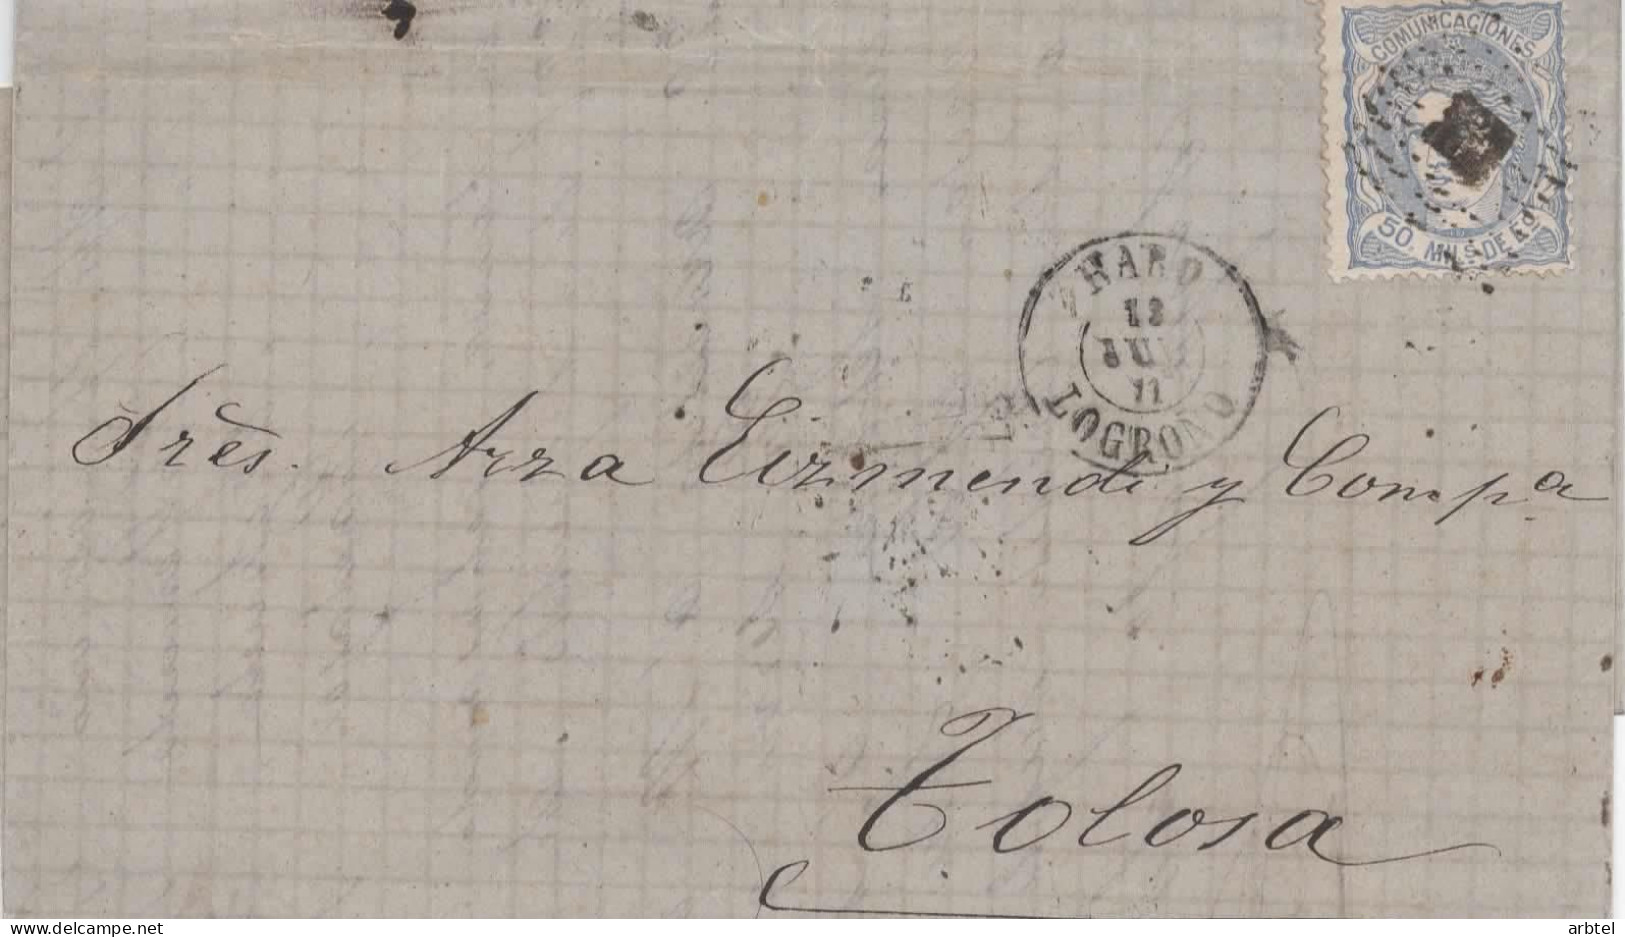 HARO LA RIOJA A TOLOSA 1871 - Briefe U. Dokumente